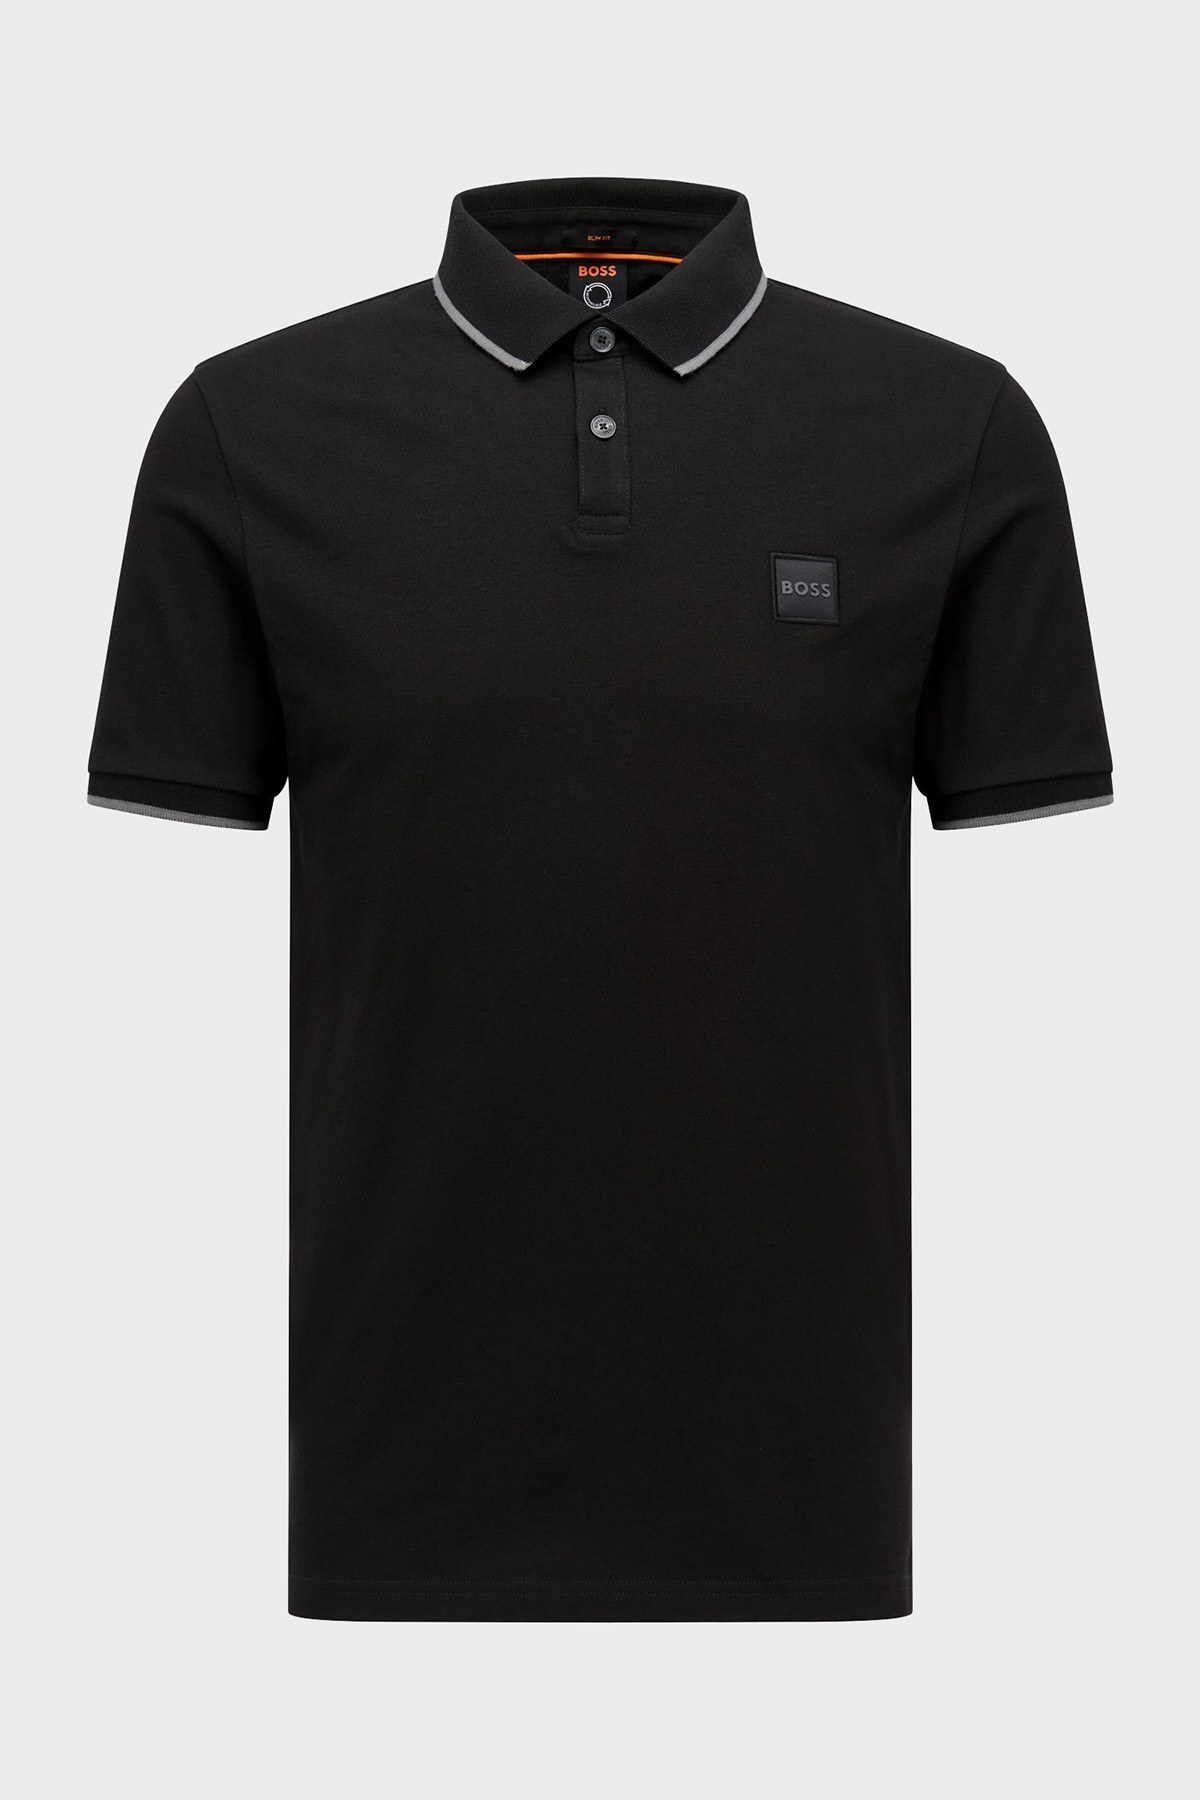 Boss Logolu Streç Pamuklu Düğmeli Slim Fit T Shirt Erkek Polo 50472665 001 SİYAH